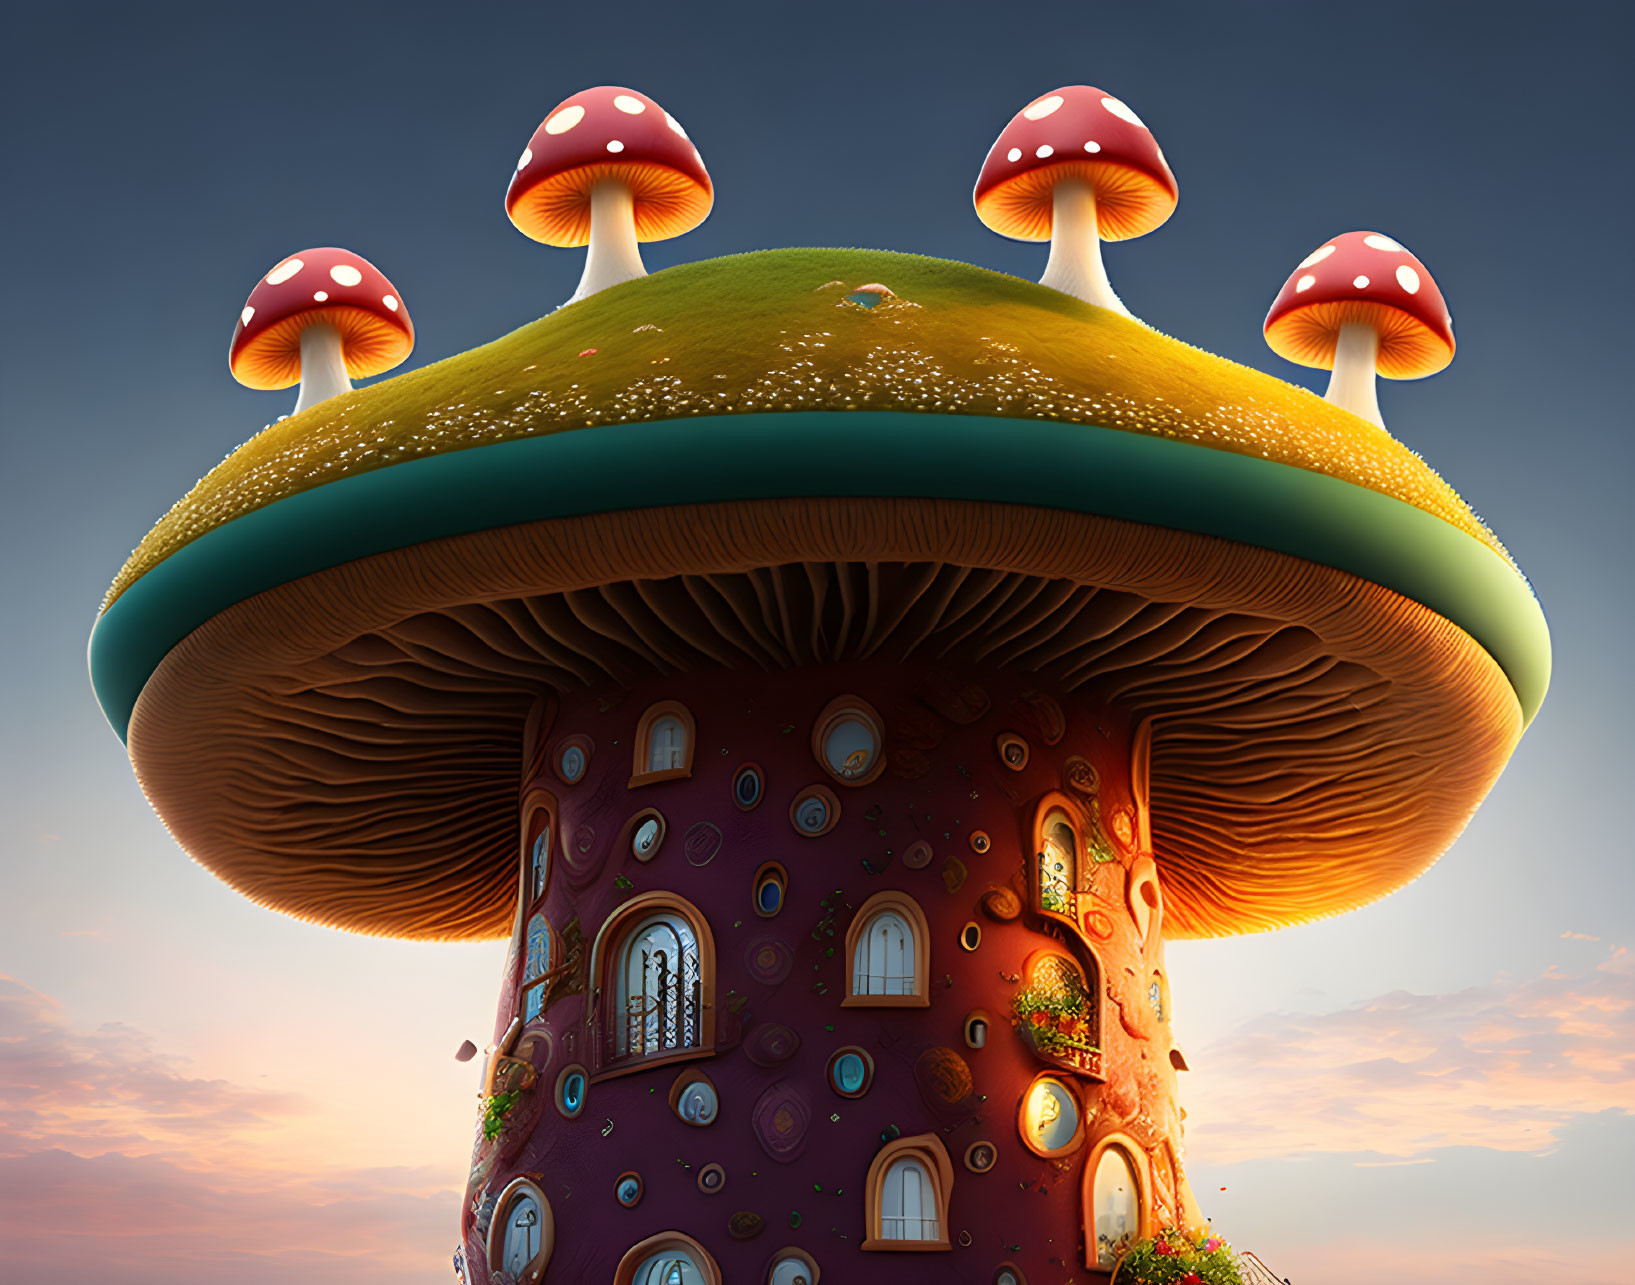 Mushroom tower